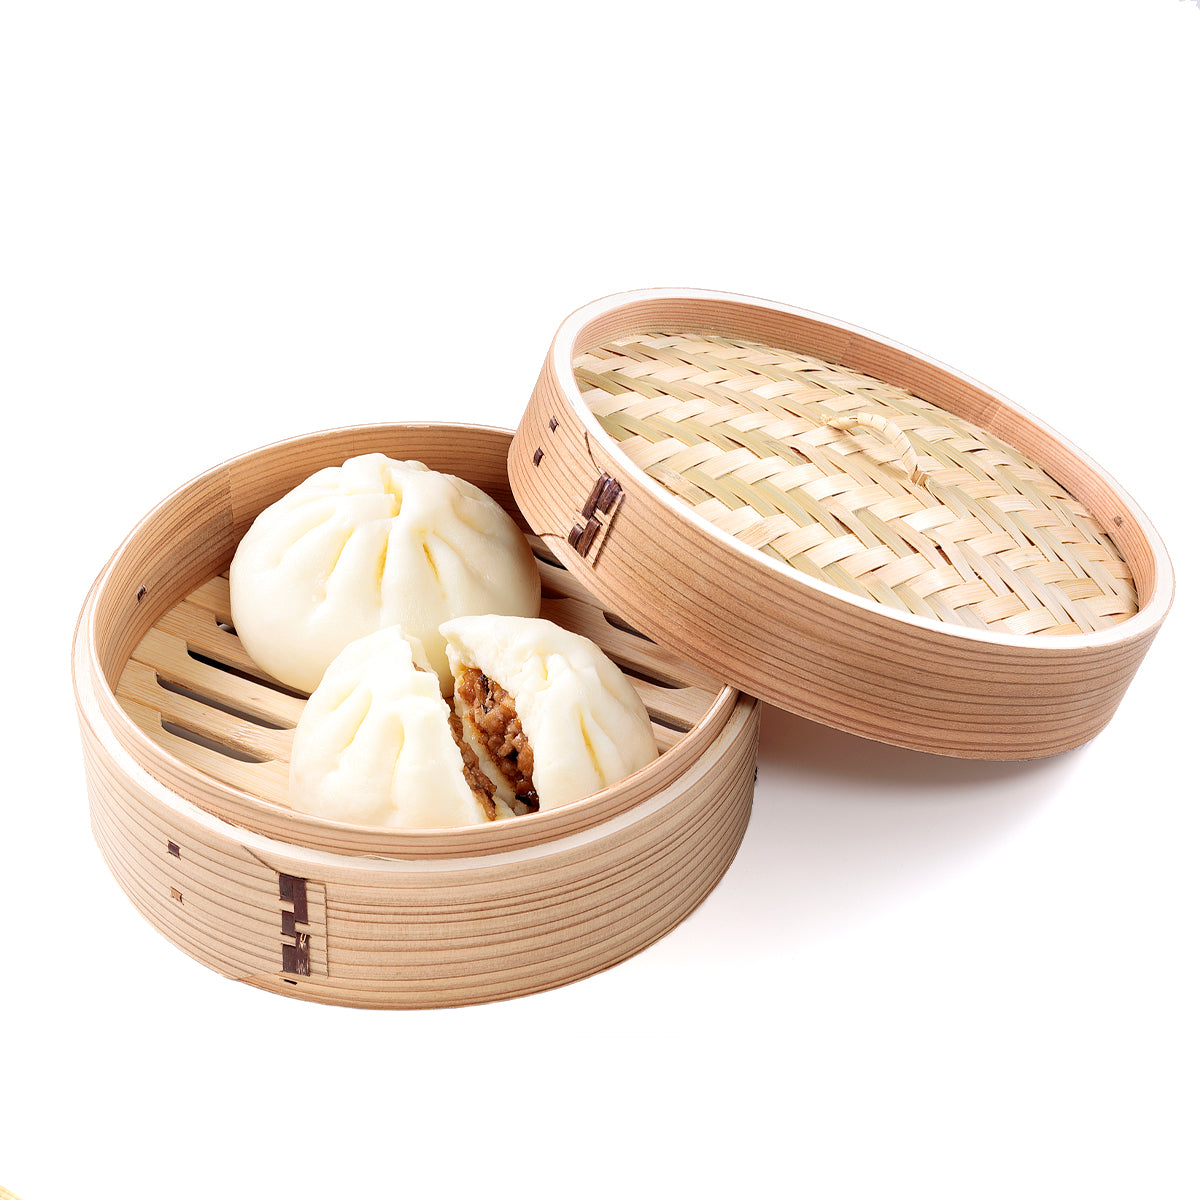 オリジナル食品サンプル「肉まん」の商品画像です。(英語表記) chinese steamed meat bun /  包子